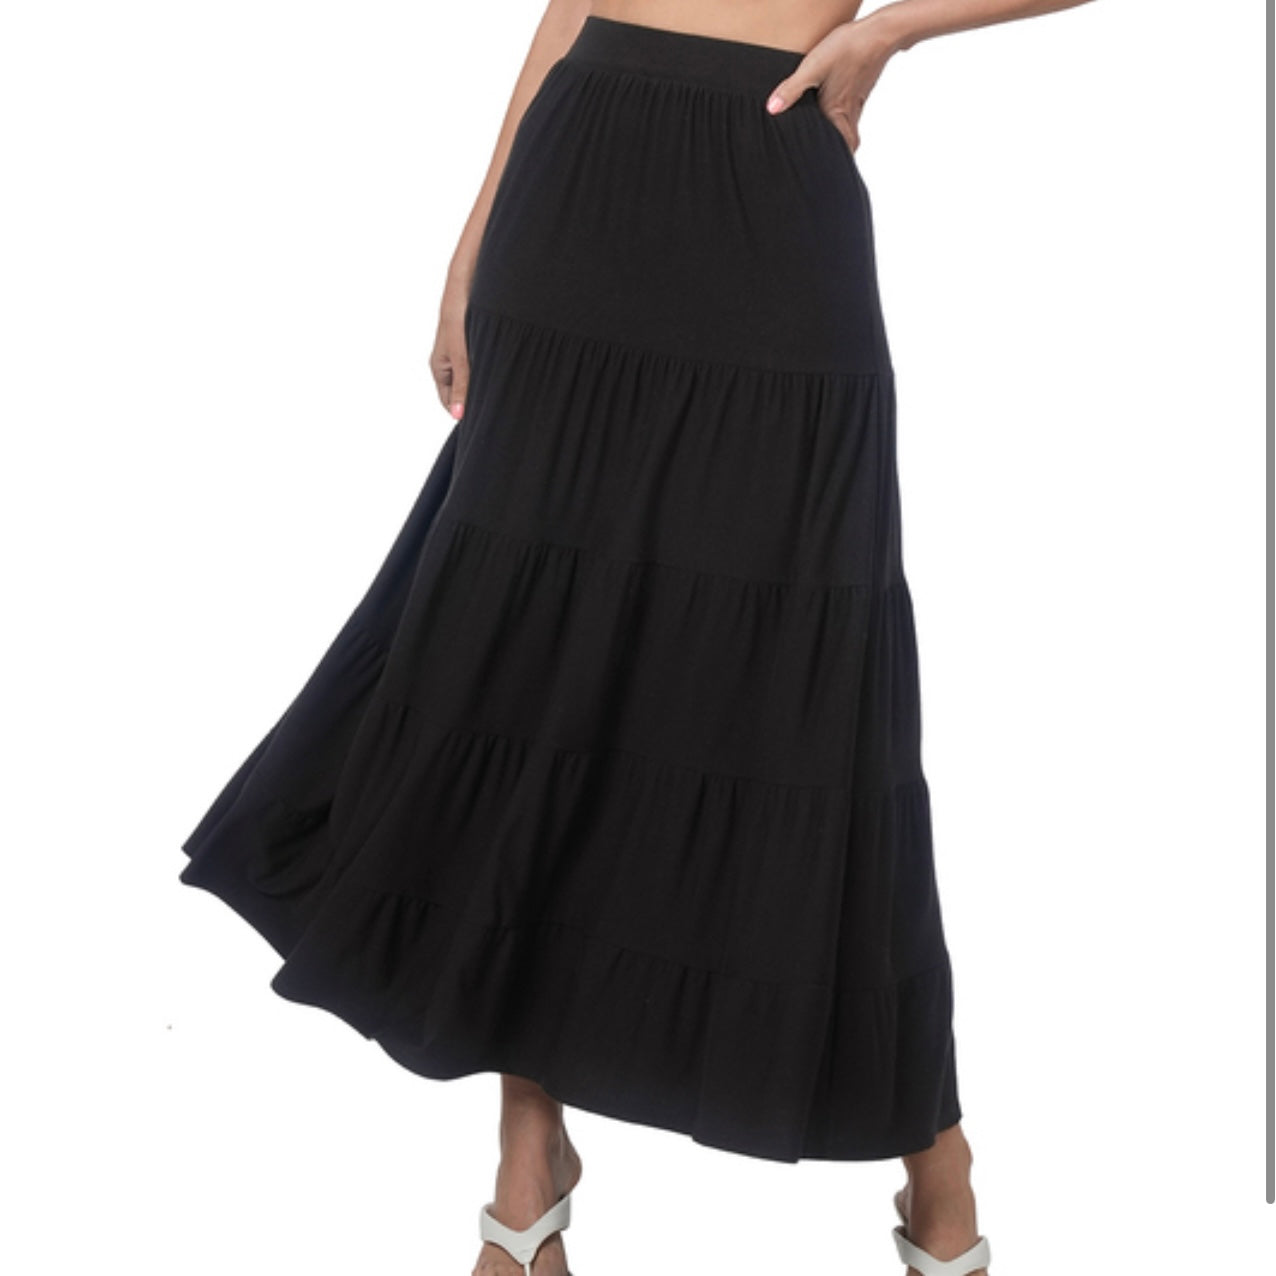 Zenana Tiered Skirt- black